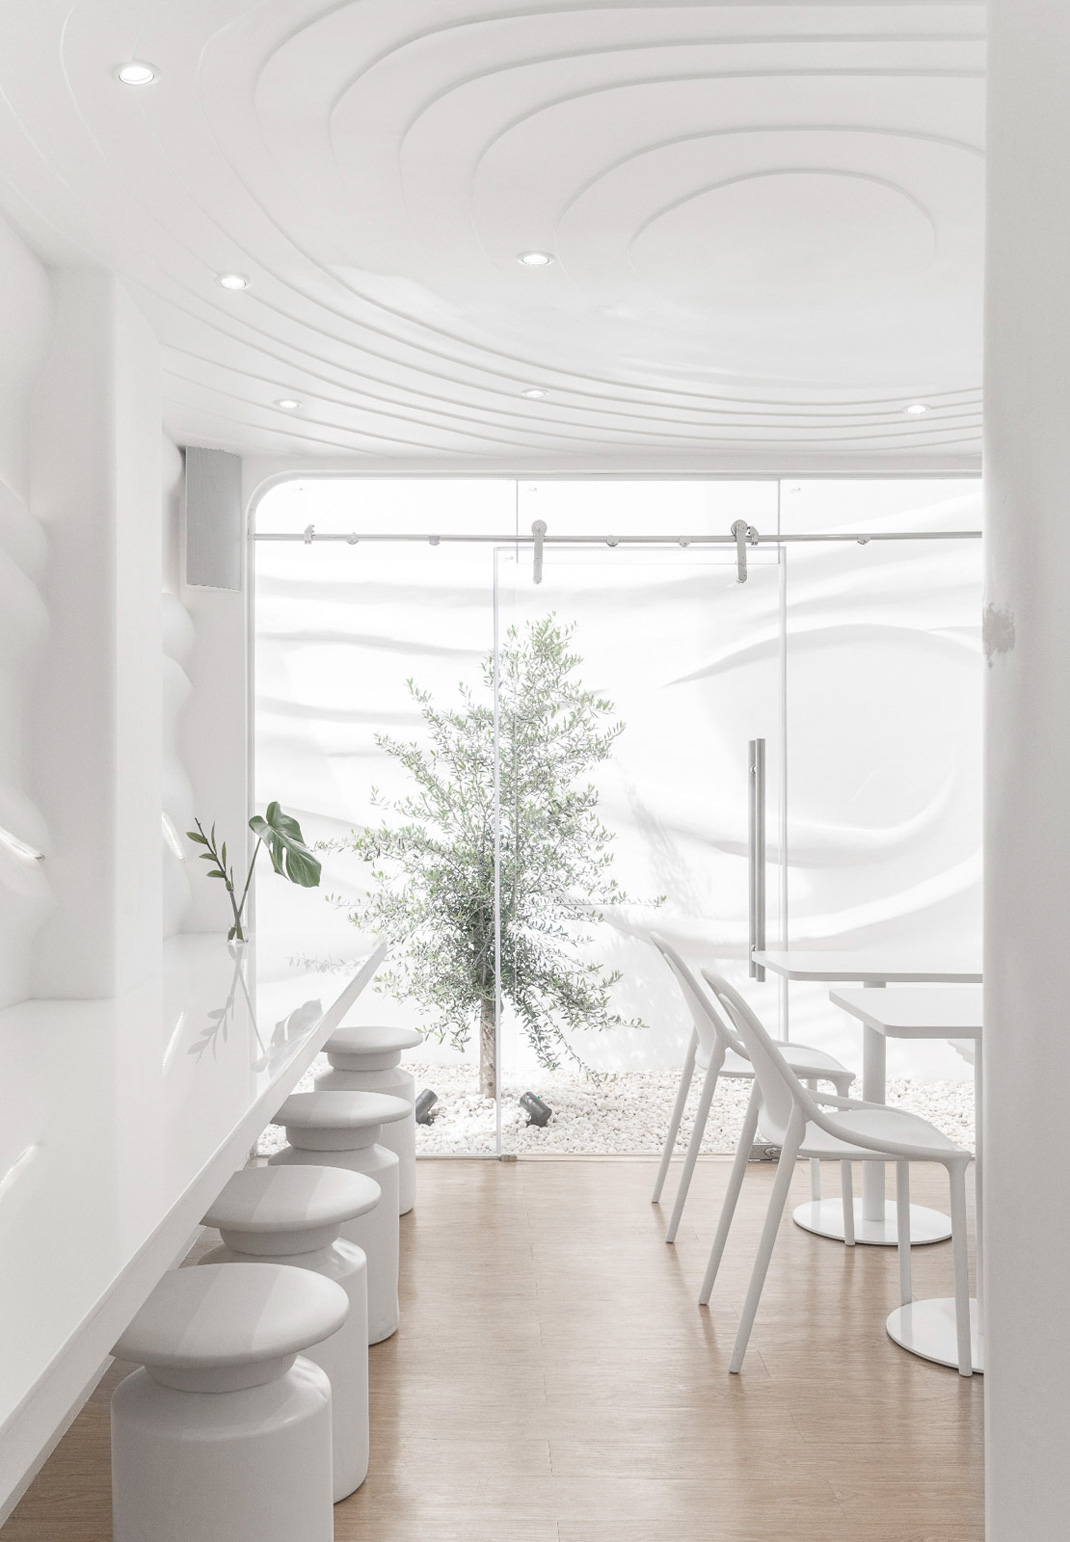 面包店Flat+White Cafe 泰国 曼谷 面包店 咖啡店 白色空间  logo设计 vi设计 空间设计